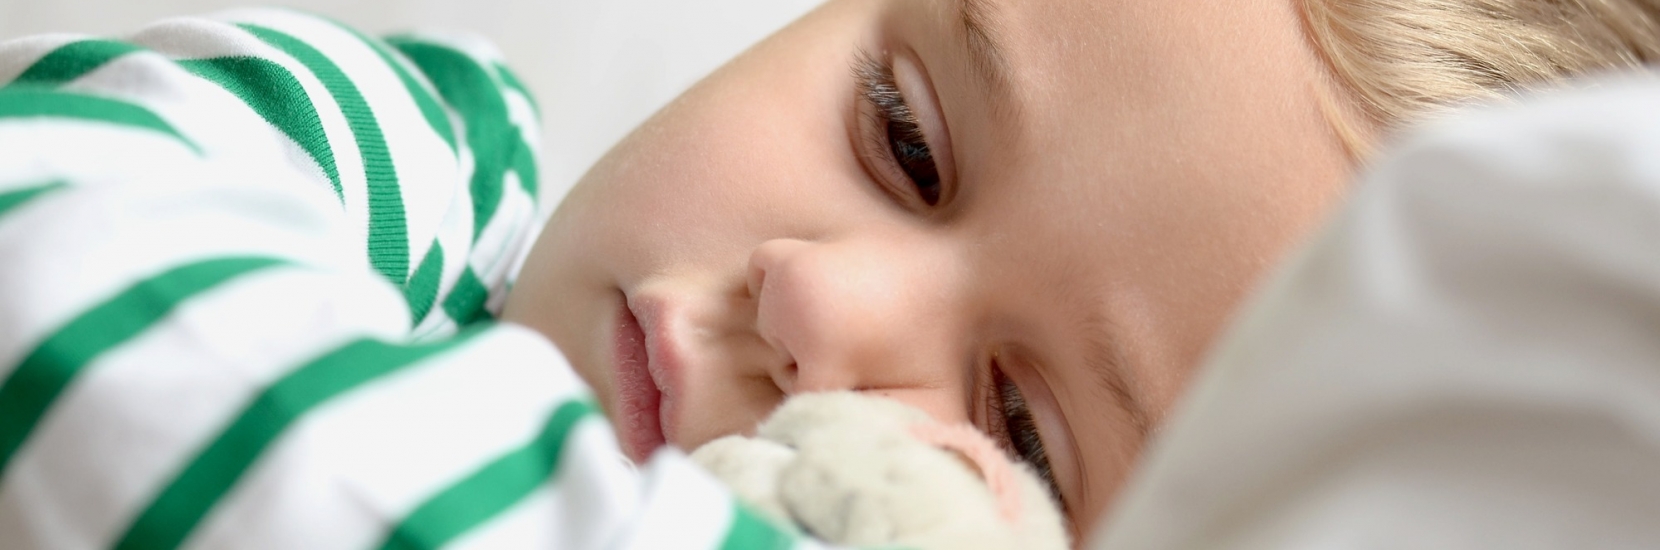 Les troubles du sommeil fréquents en pédiatrie